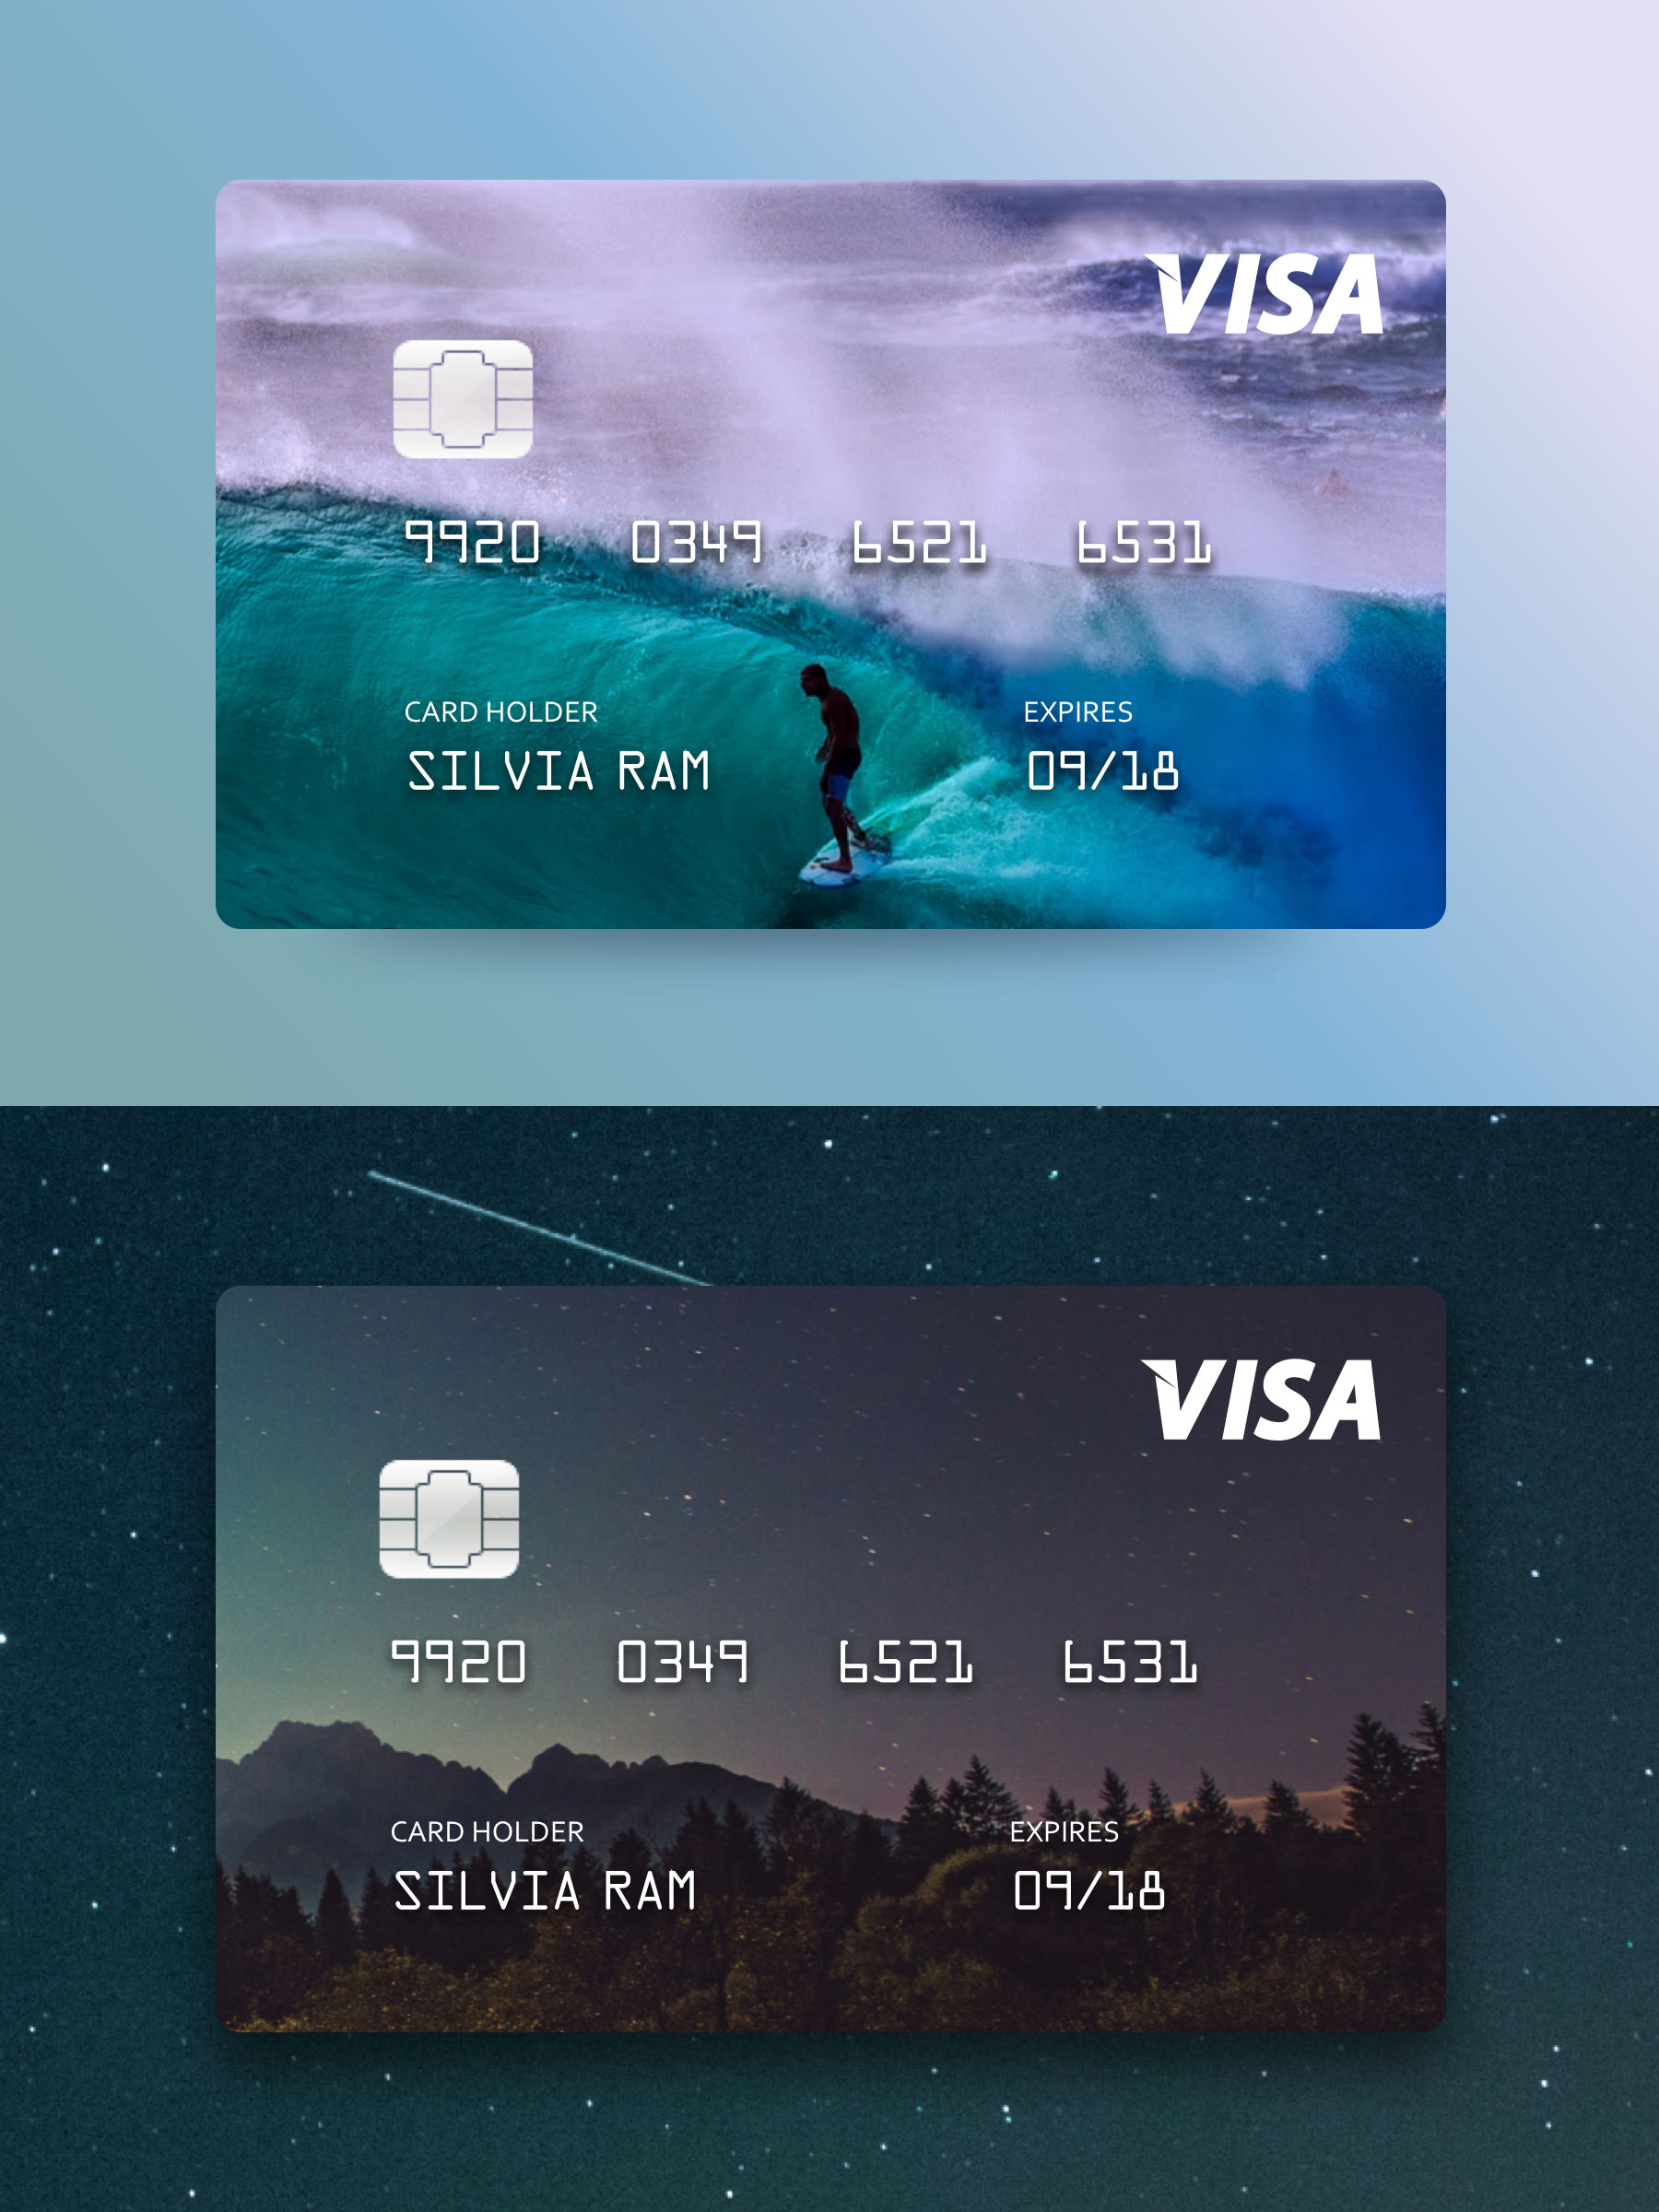 VISA 信用卡模版